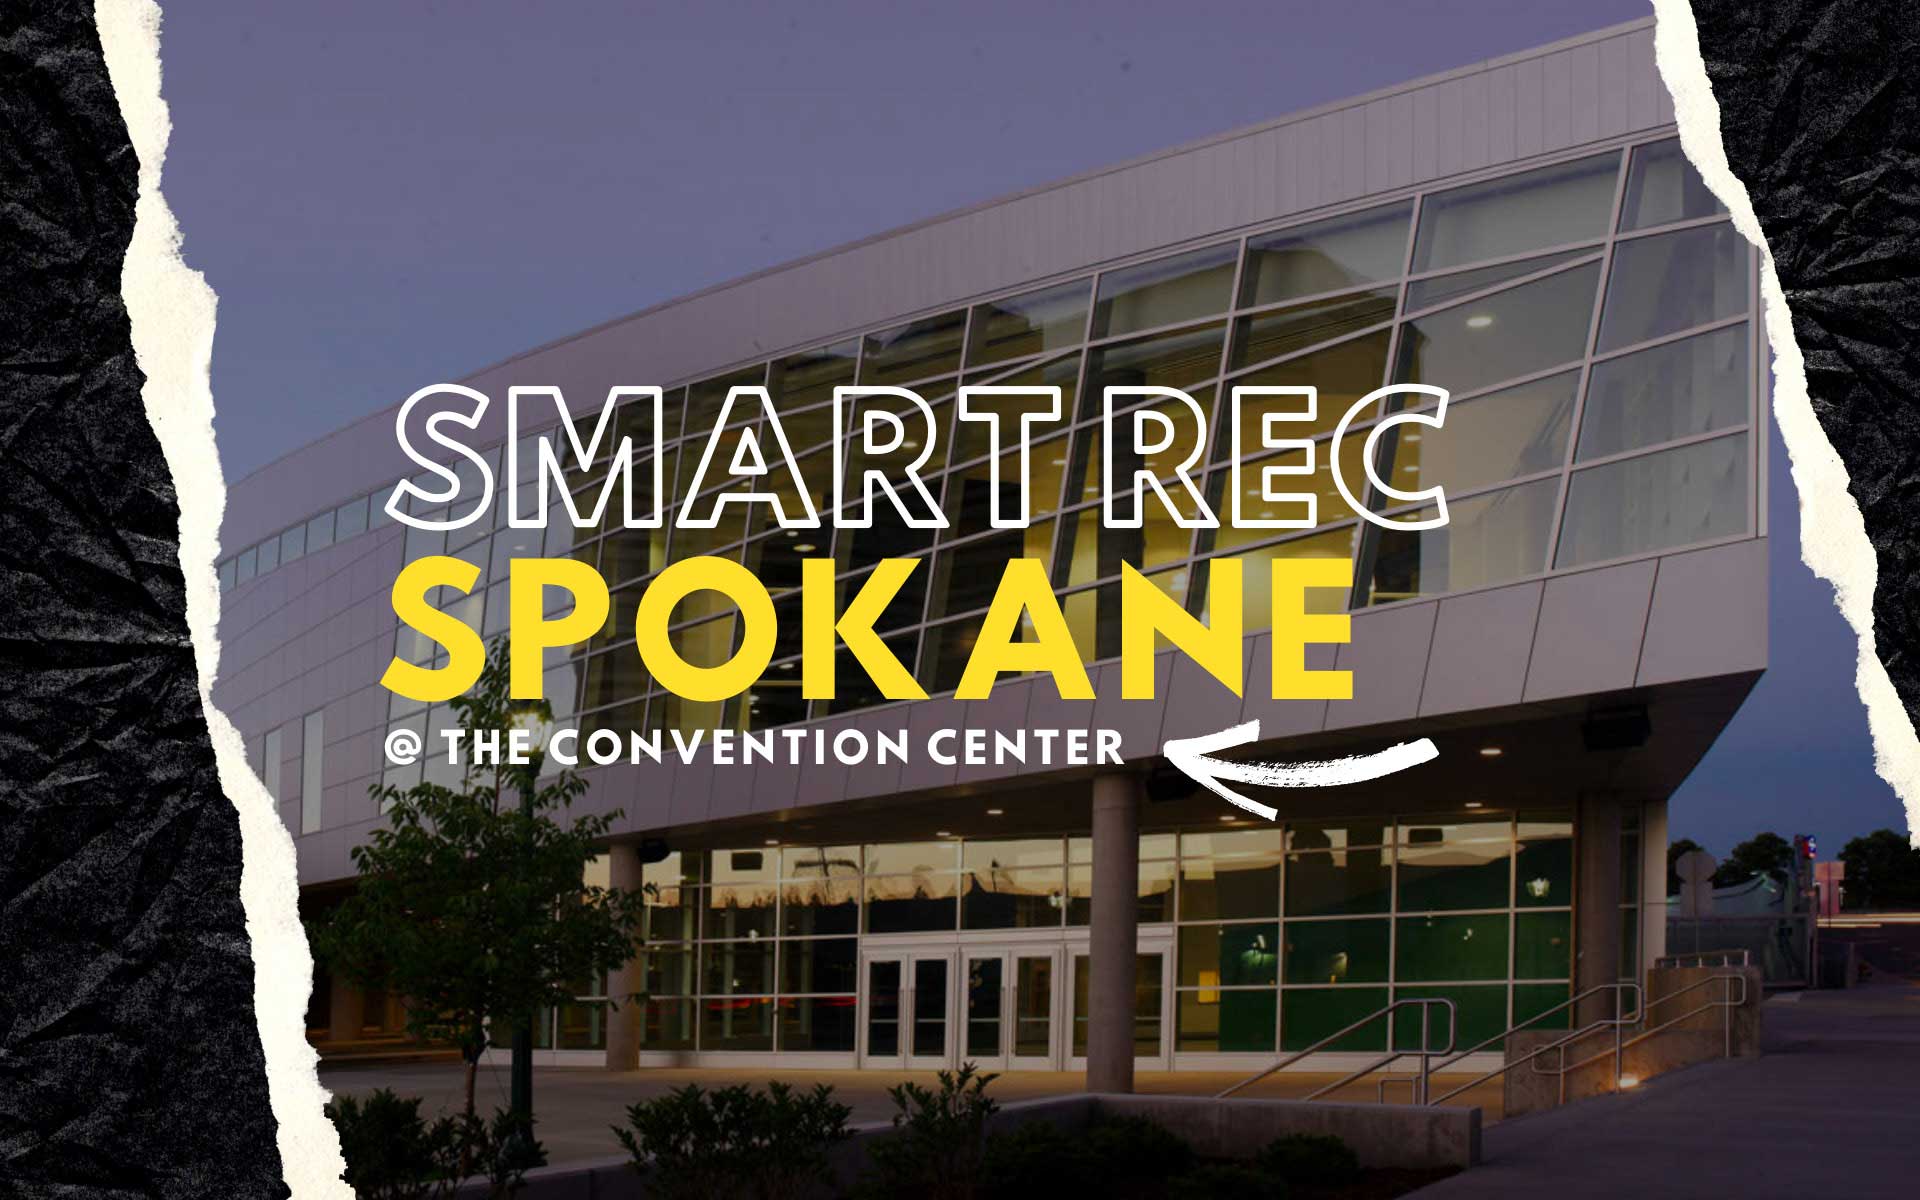 Smart Rec Spokane City of Spokane, Washington